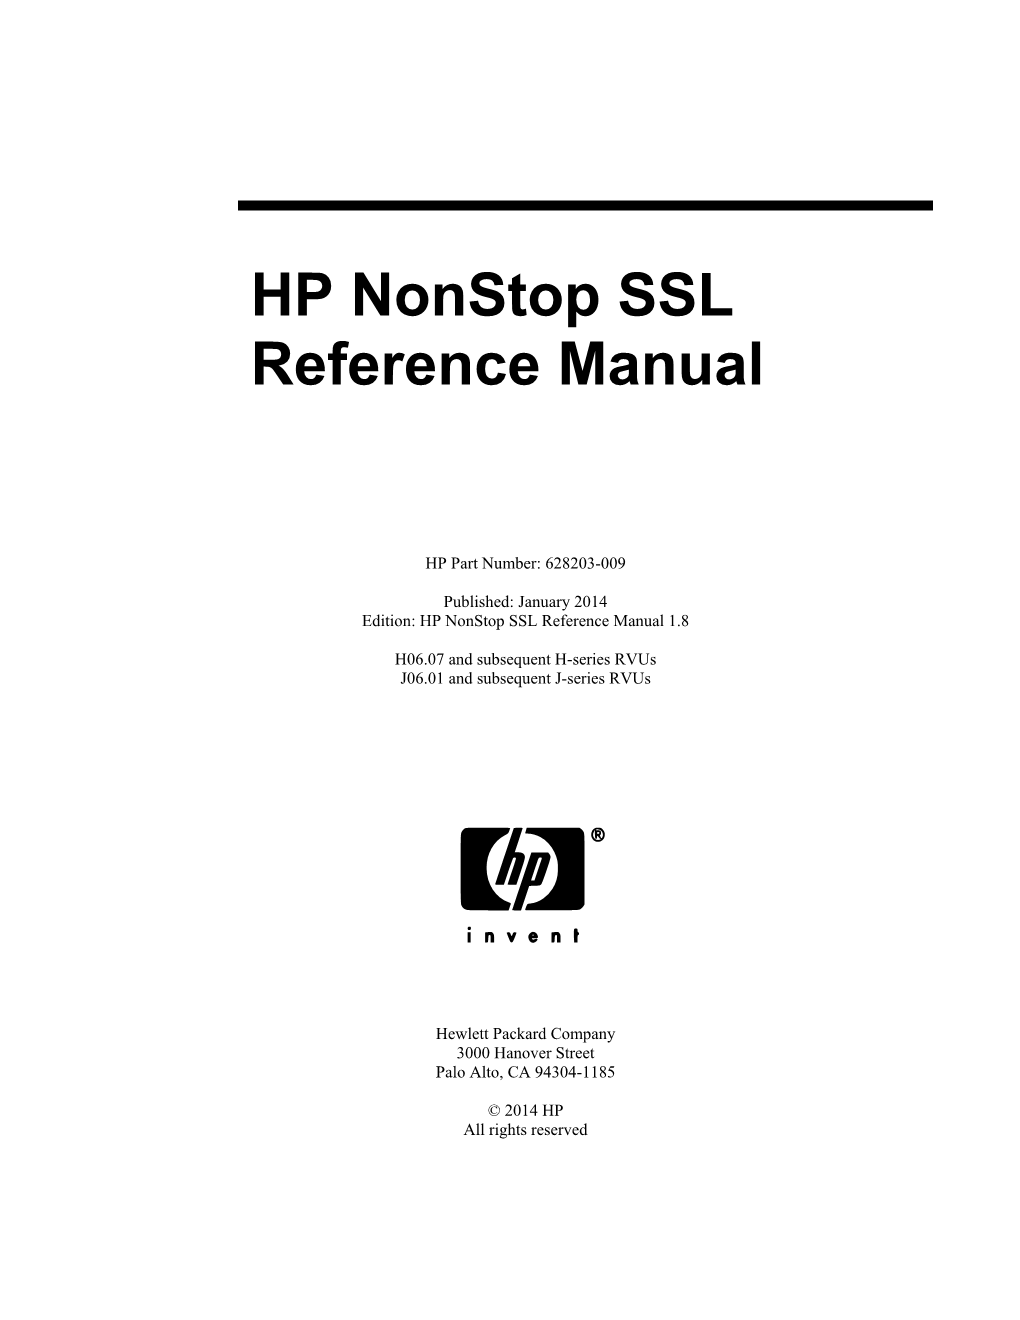 SSL Reference Manual